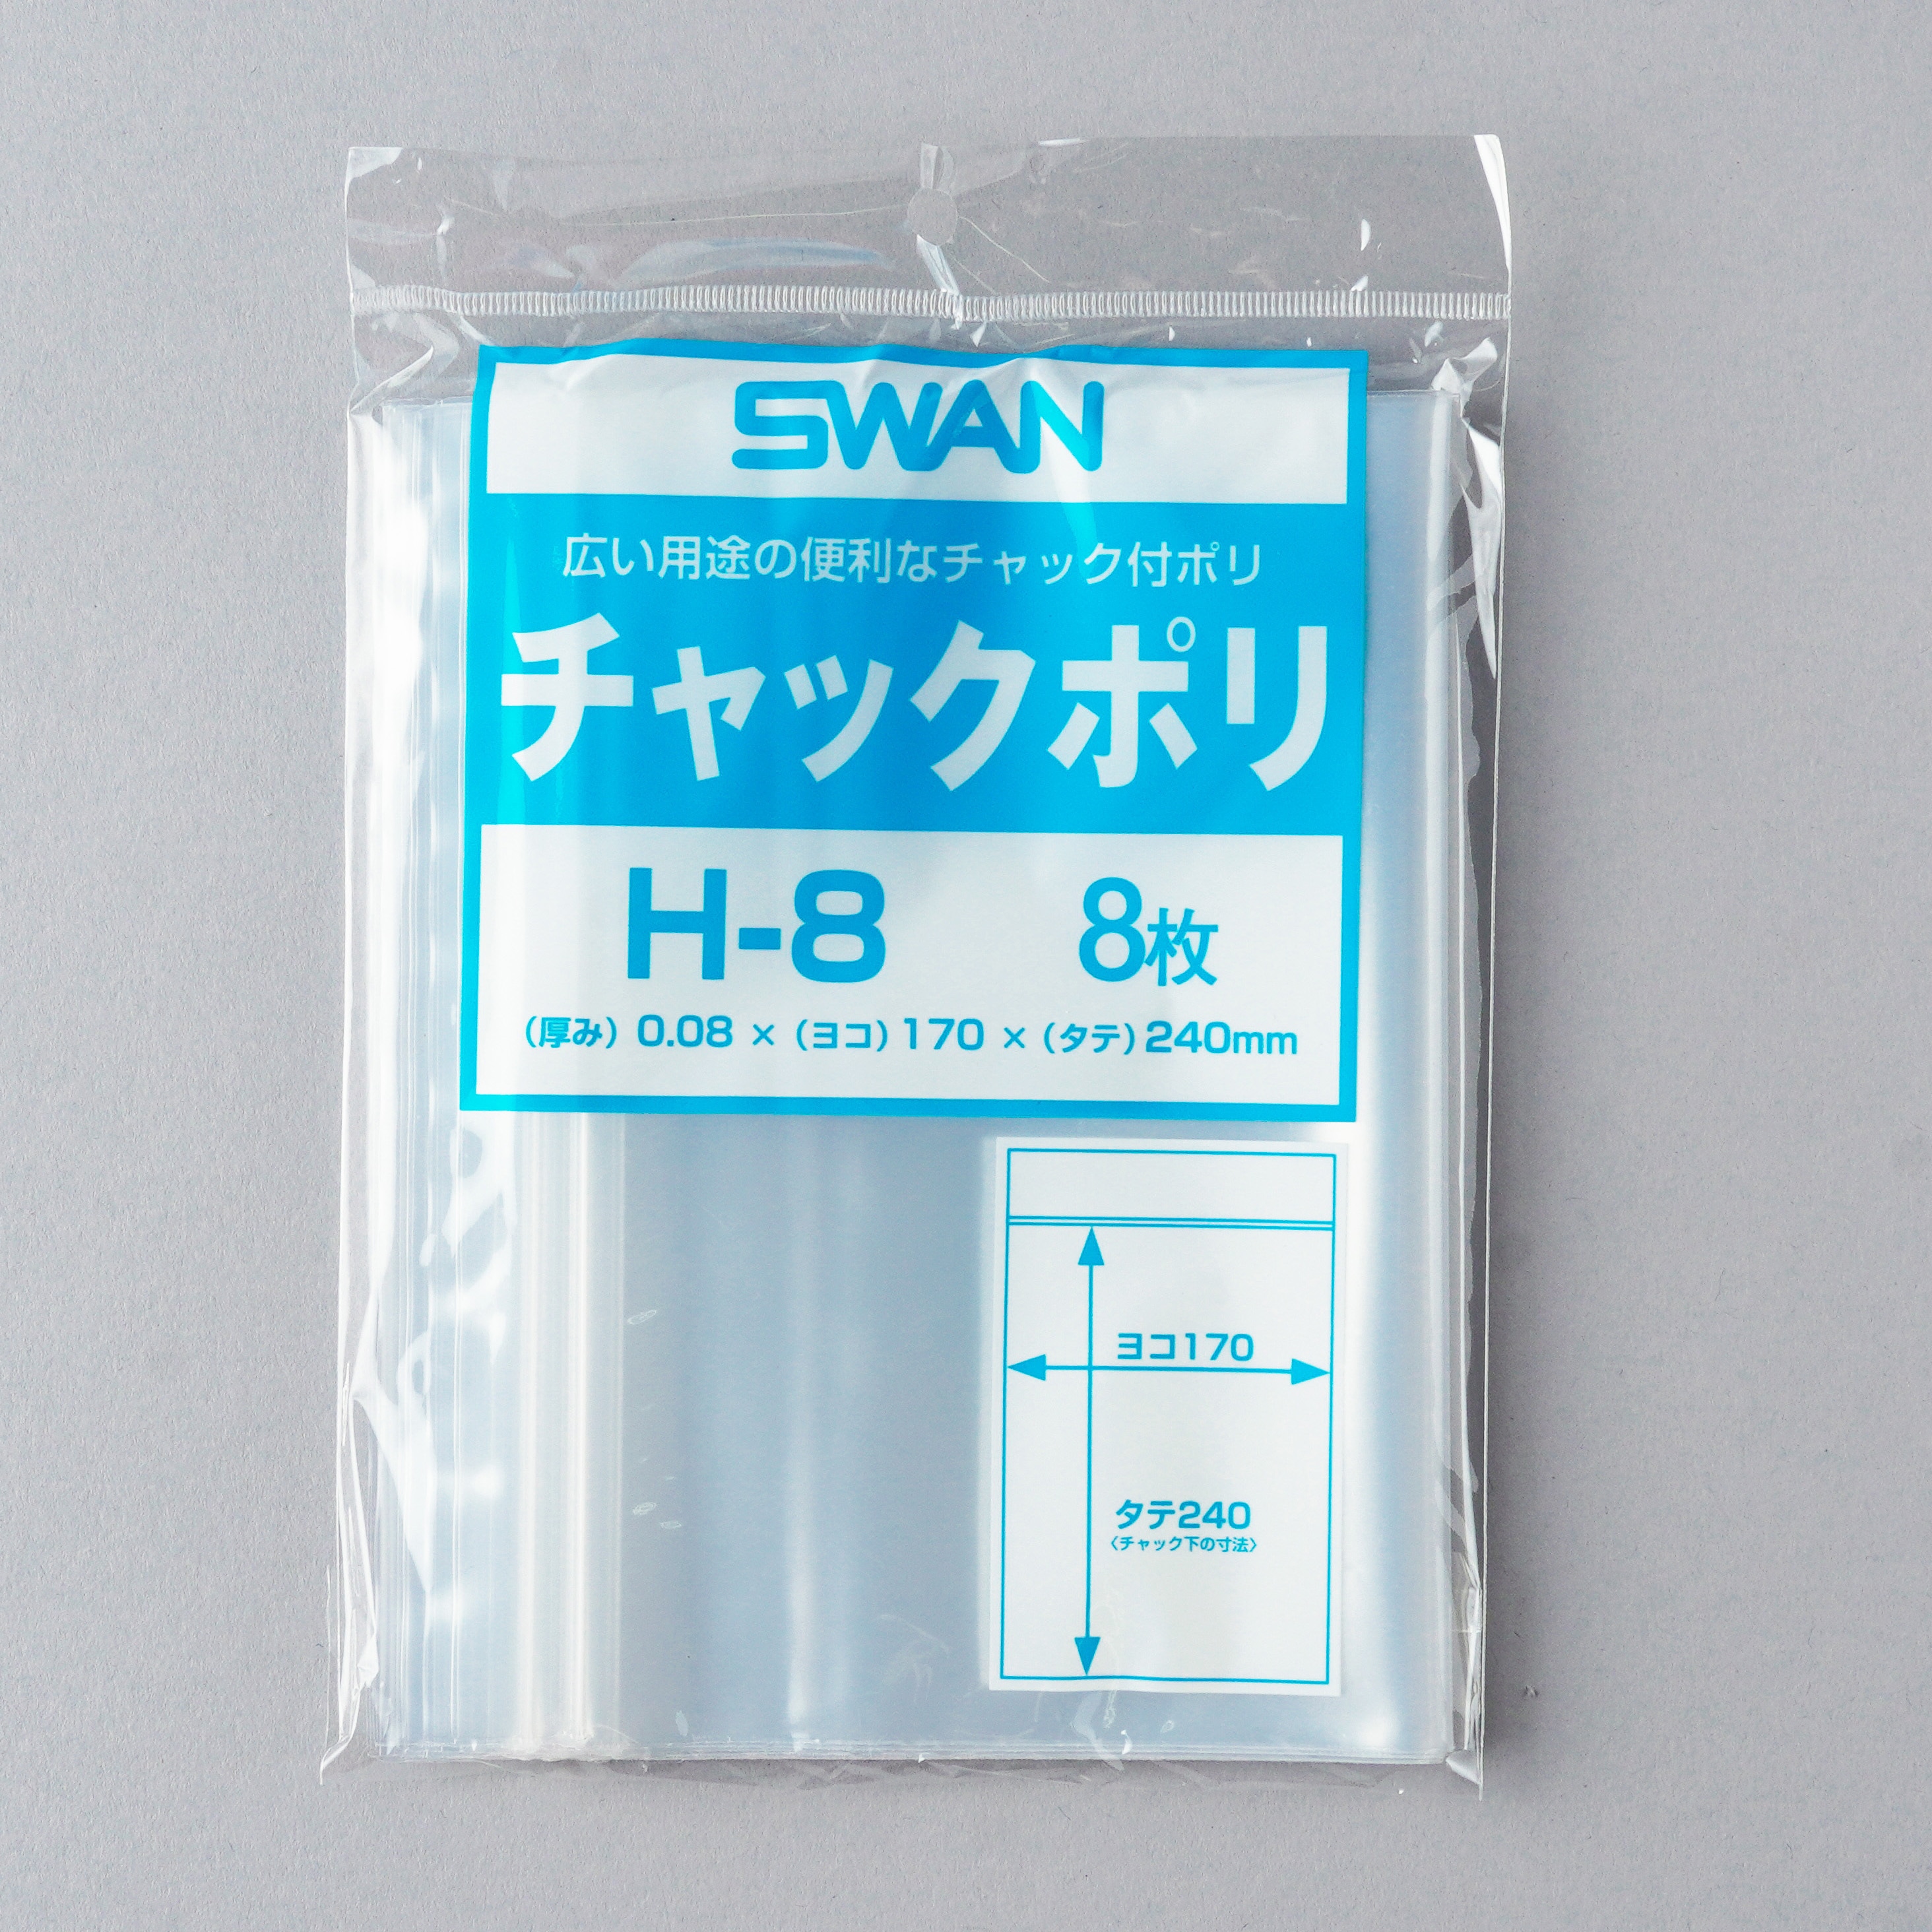 色々な SWAN スワン :SWAN チャックポリ アクセサリーA 006656002 ジッパー袋 チャック ポリ 袋 